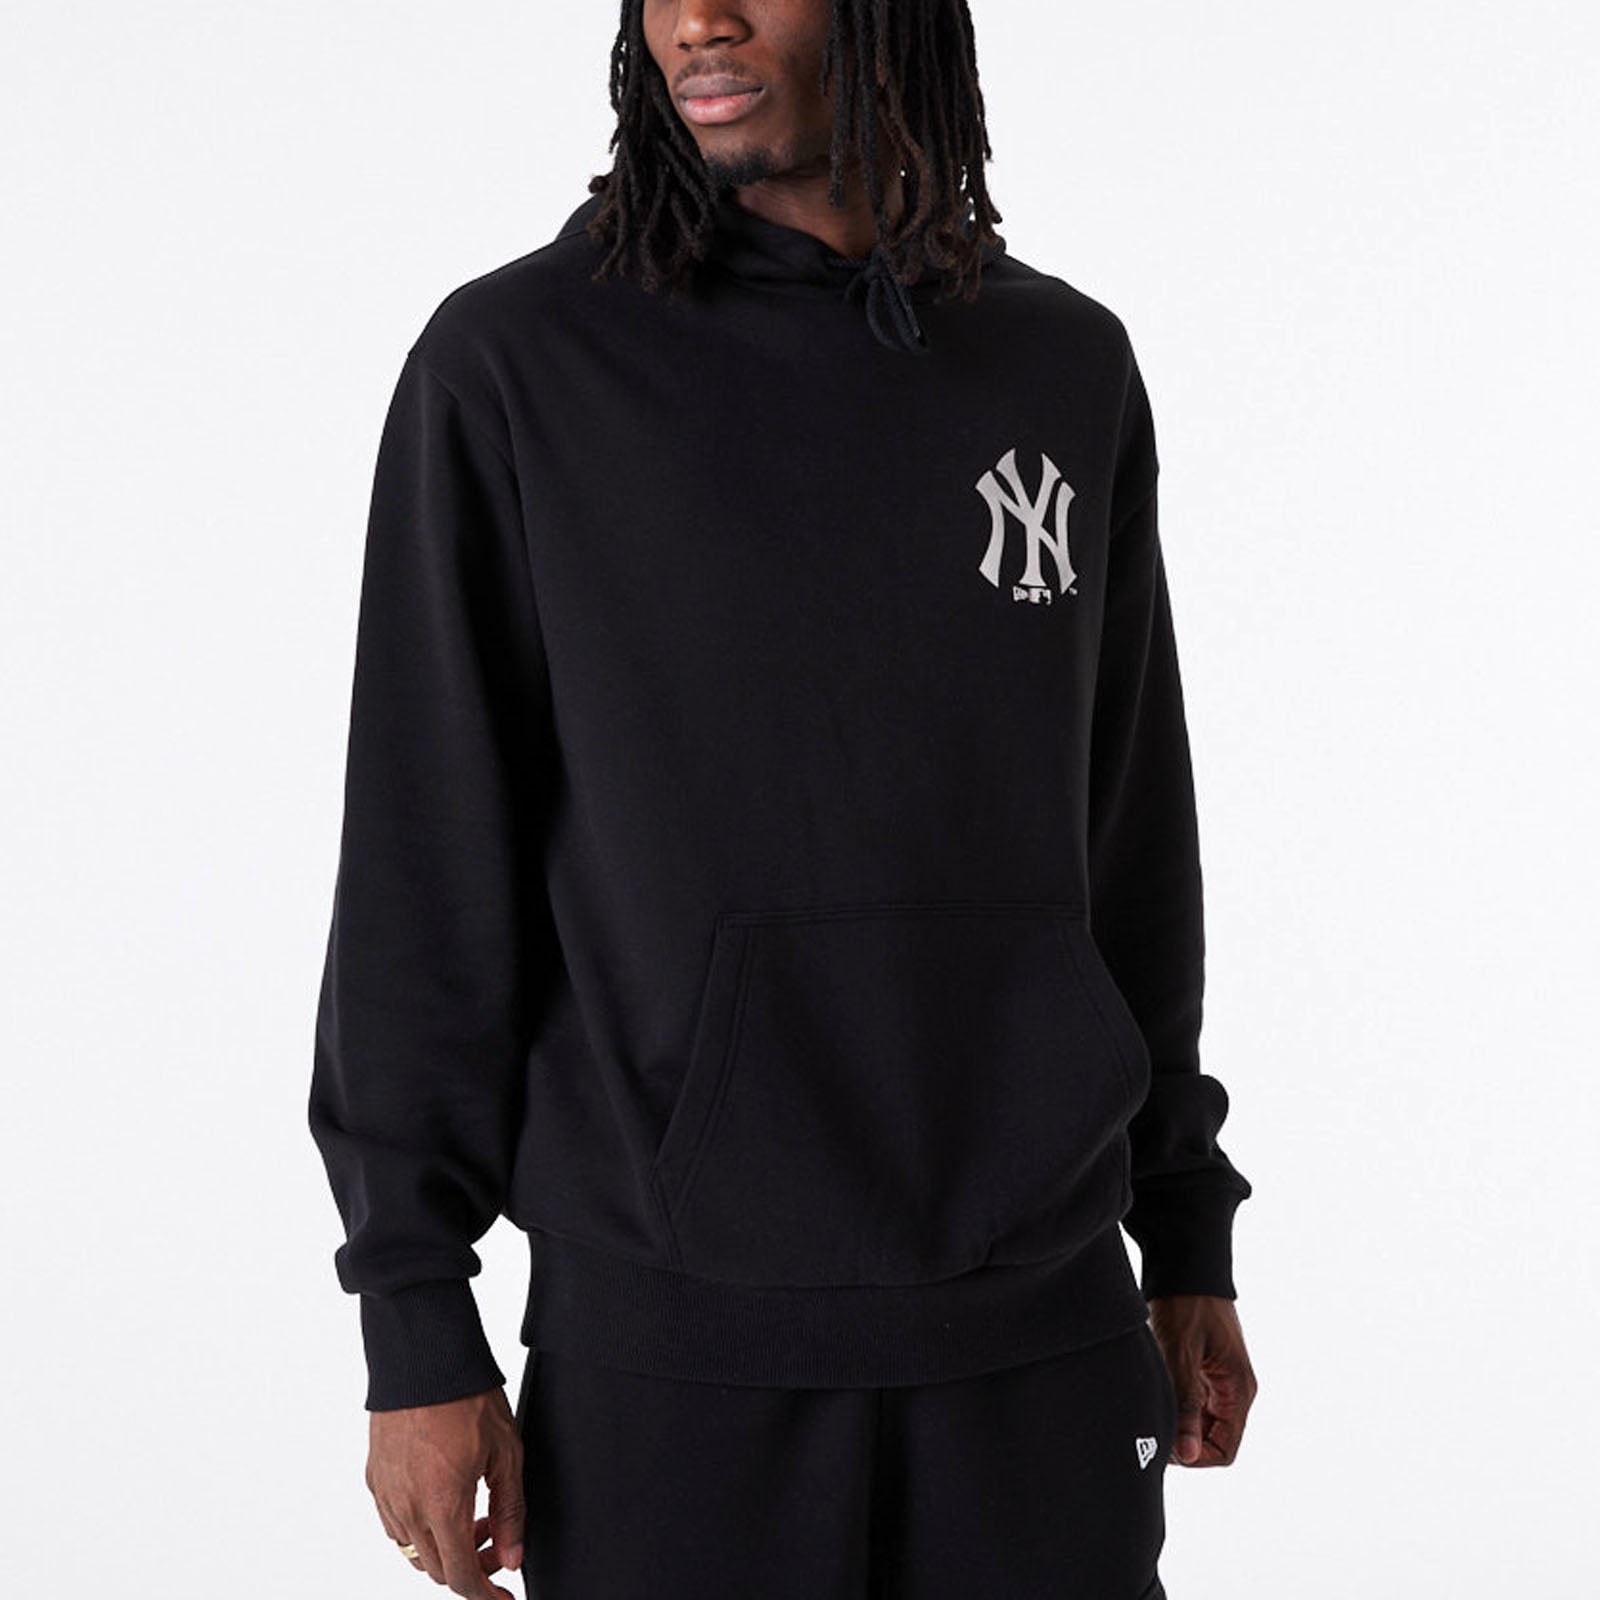 New Era sweatshirt Hoody York Yankees mens beige color buy on PRM